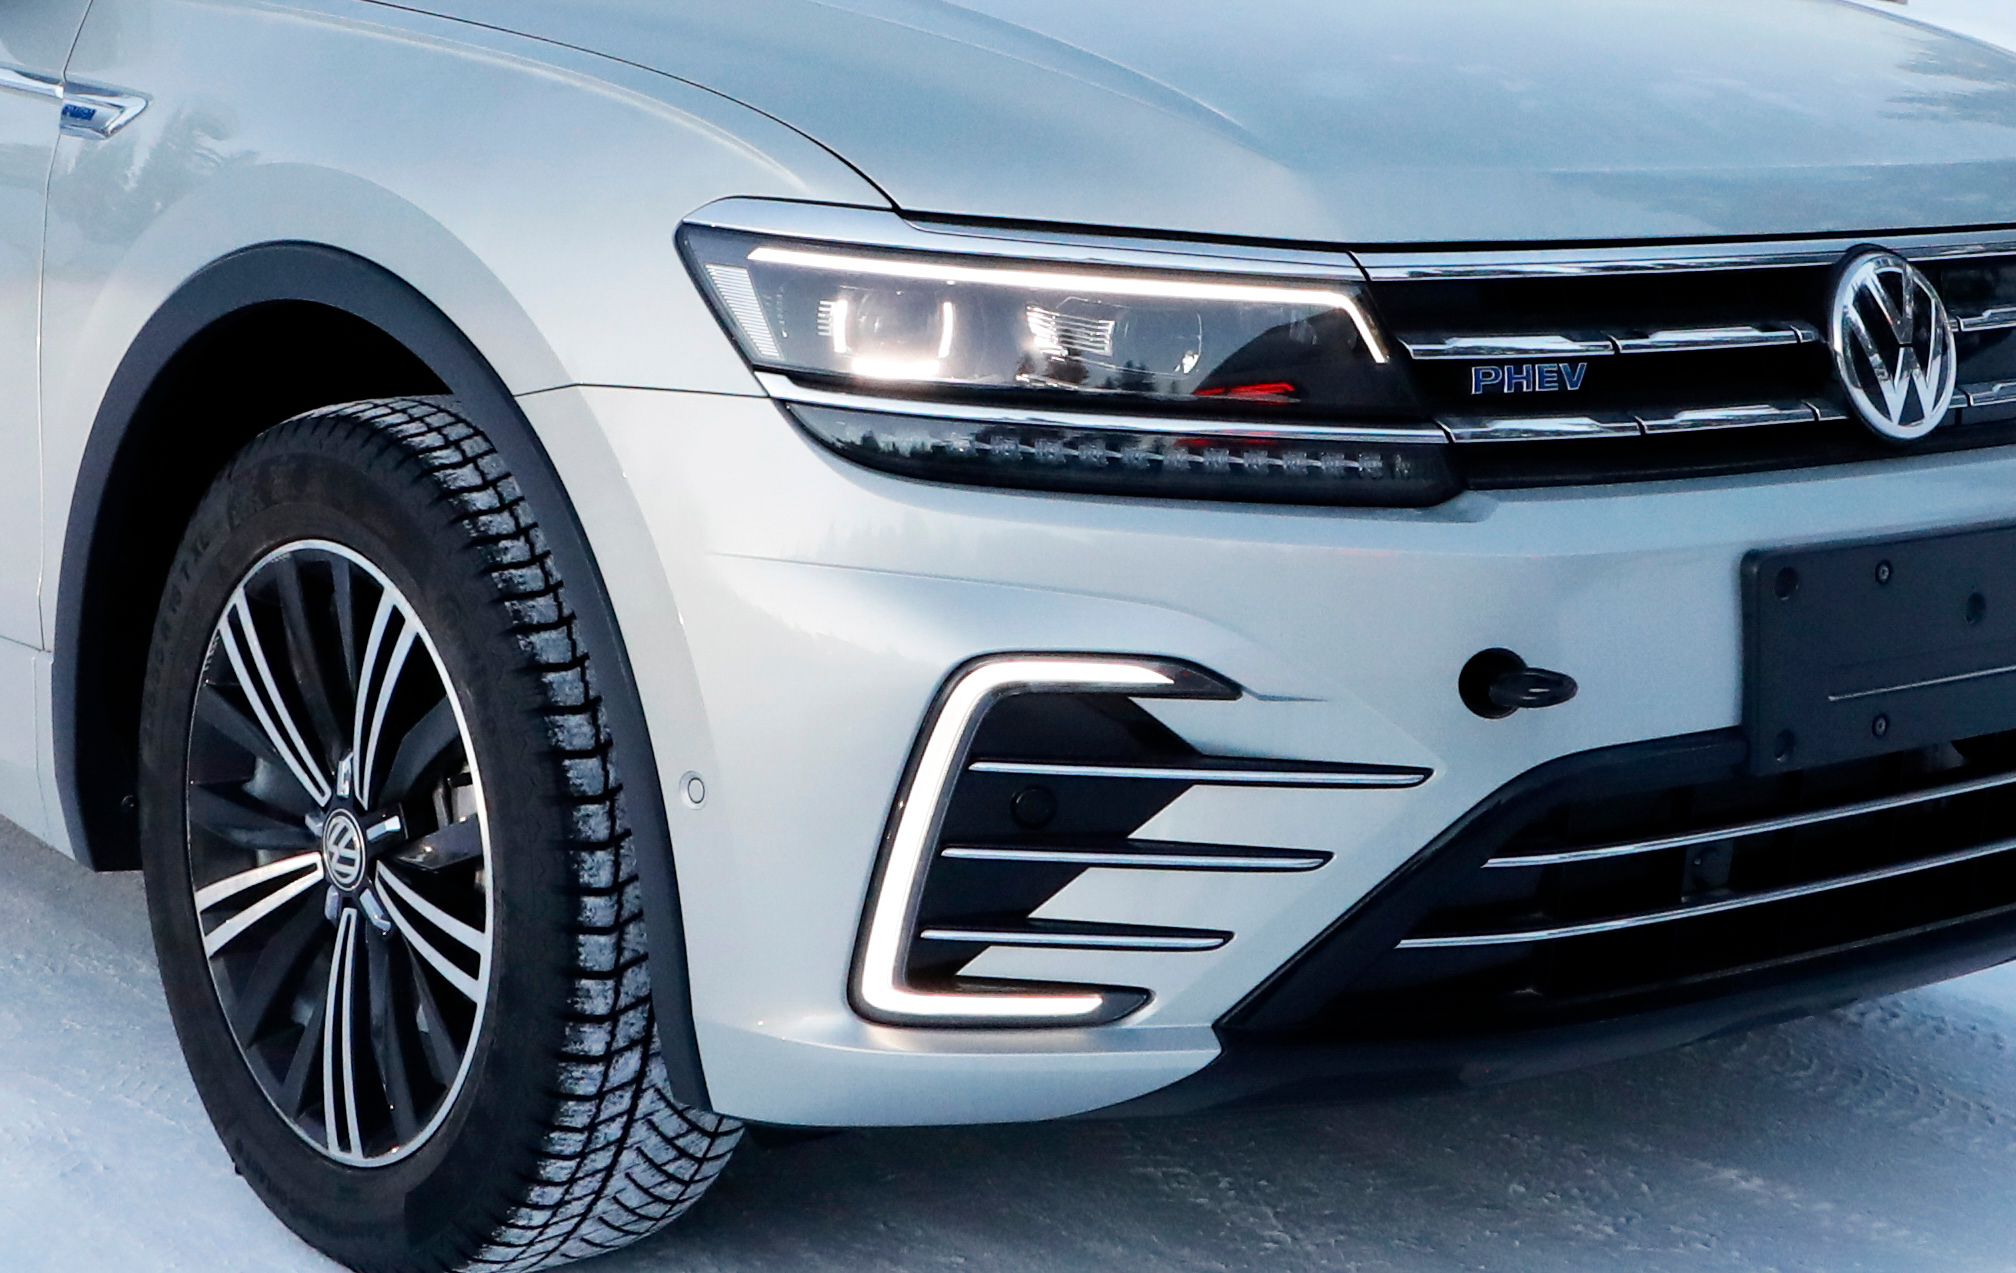 2019 Volkswagen Tiguan PHEV/GTE